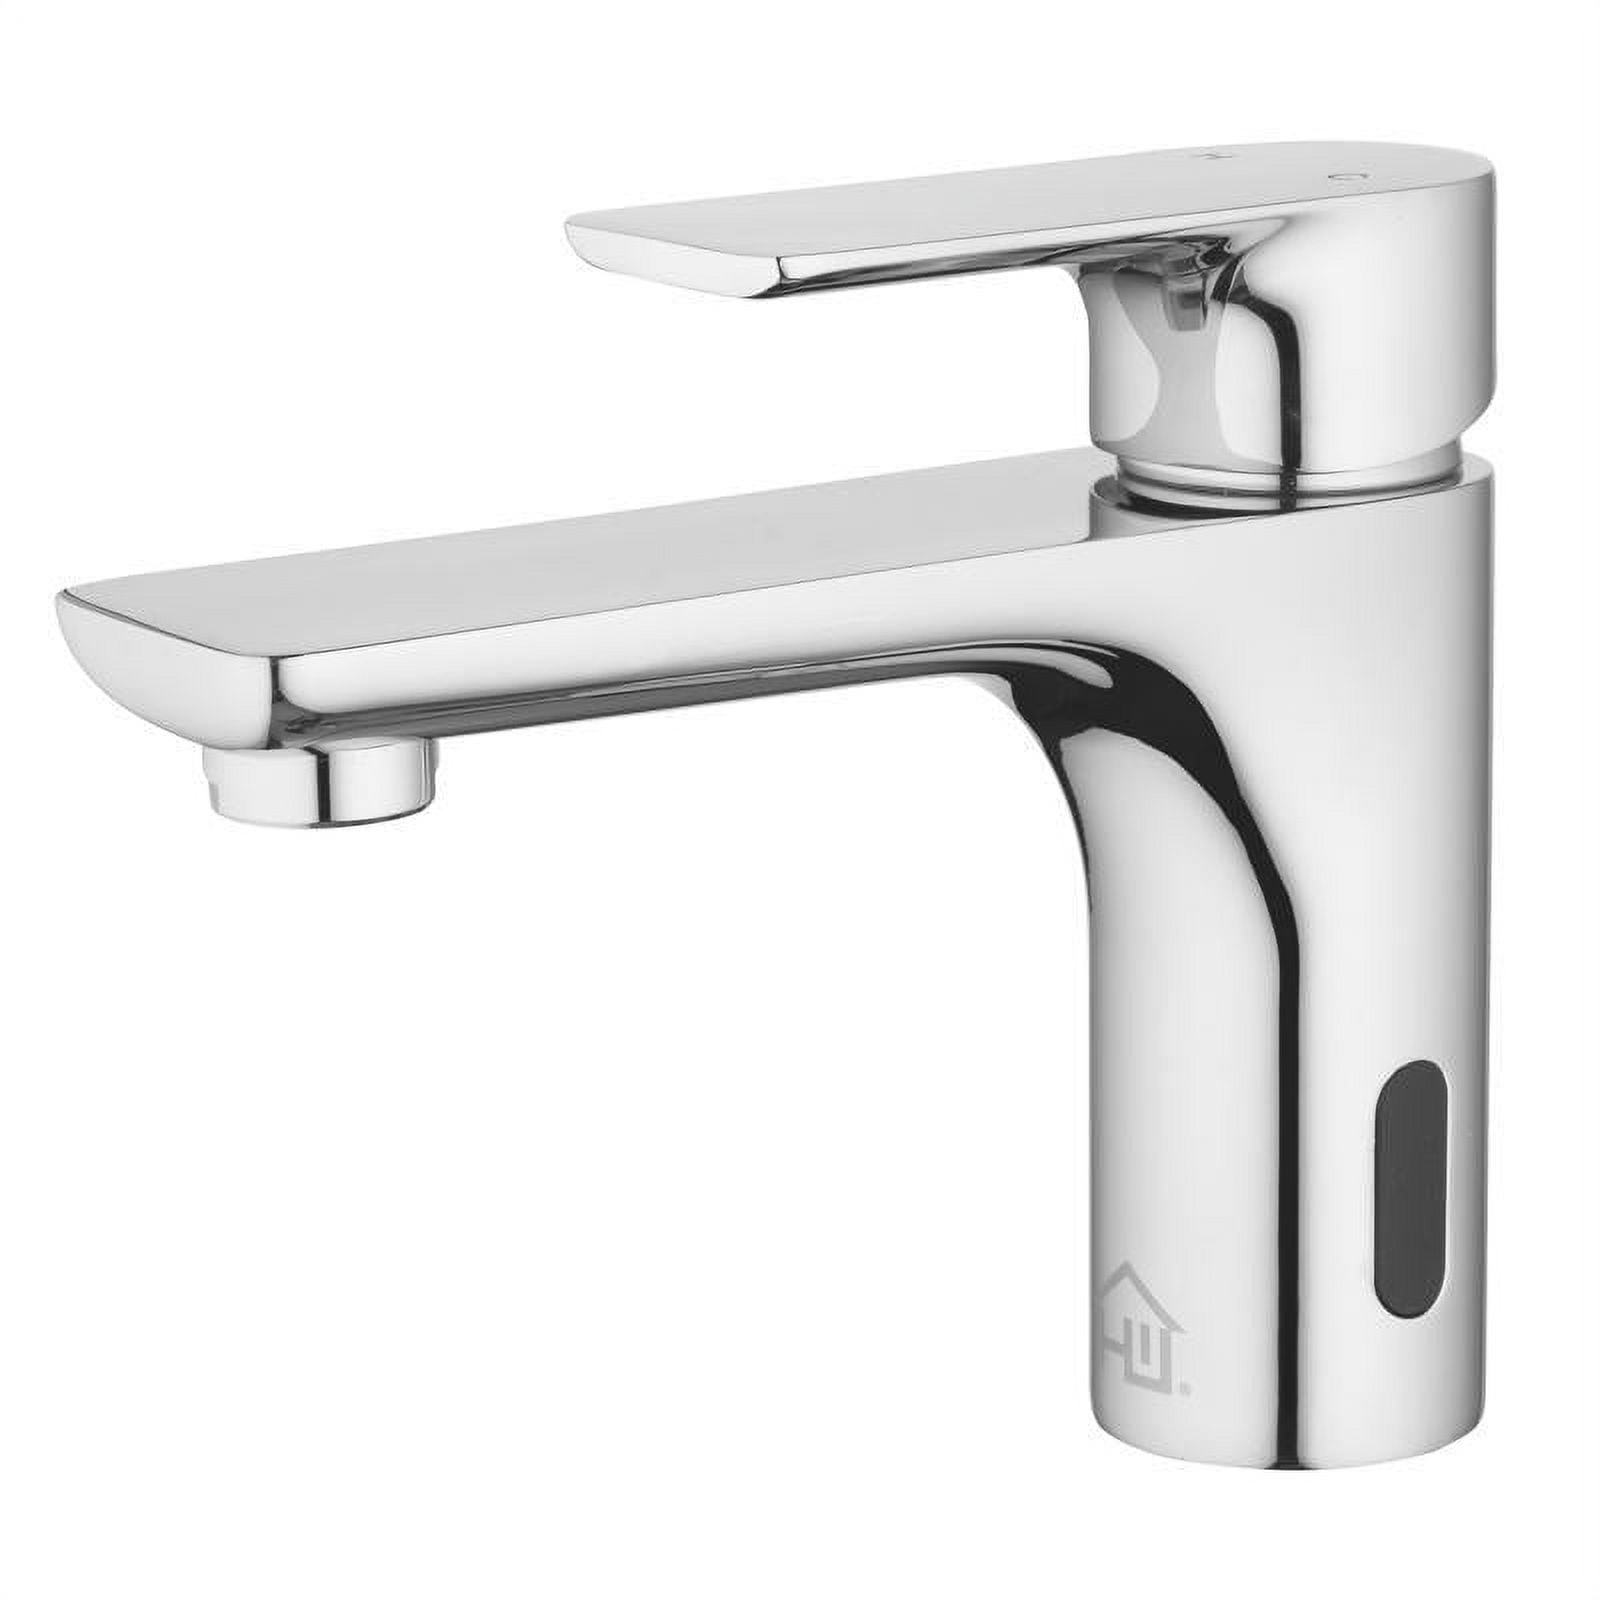 4000626 2 in. Motion Sensing Single-Handle Bathroom Sink Faucet, Chrome -  HOMEWERKS WORLDWIDE